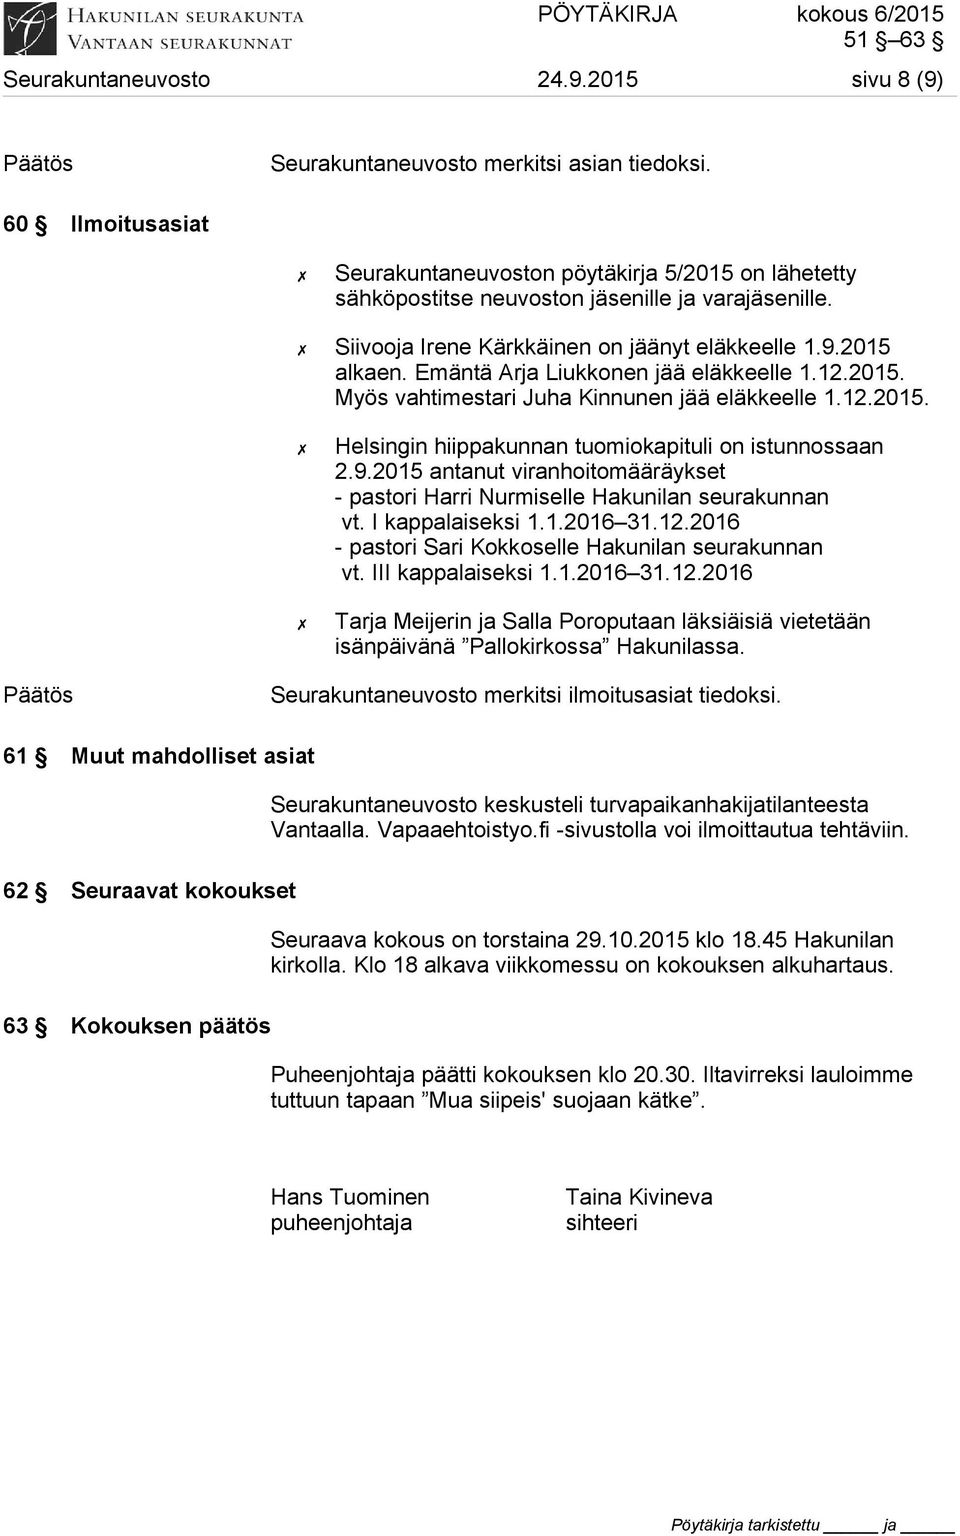 Emäntä Arja Liukkonen jää eläkkeelle 1.12.2015. Myös vahtimestari Juha Kinnunen jää eläkkeelle 1.12.2015. Helsingin hiippakunnan tuomiokapituli on istunnossaan 2.9.